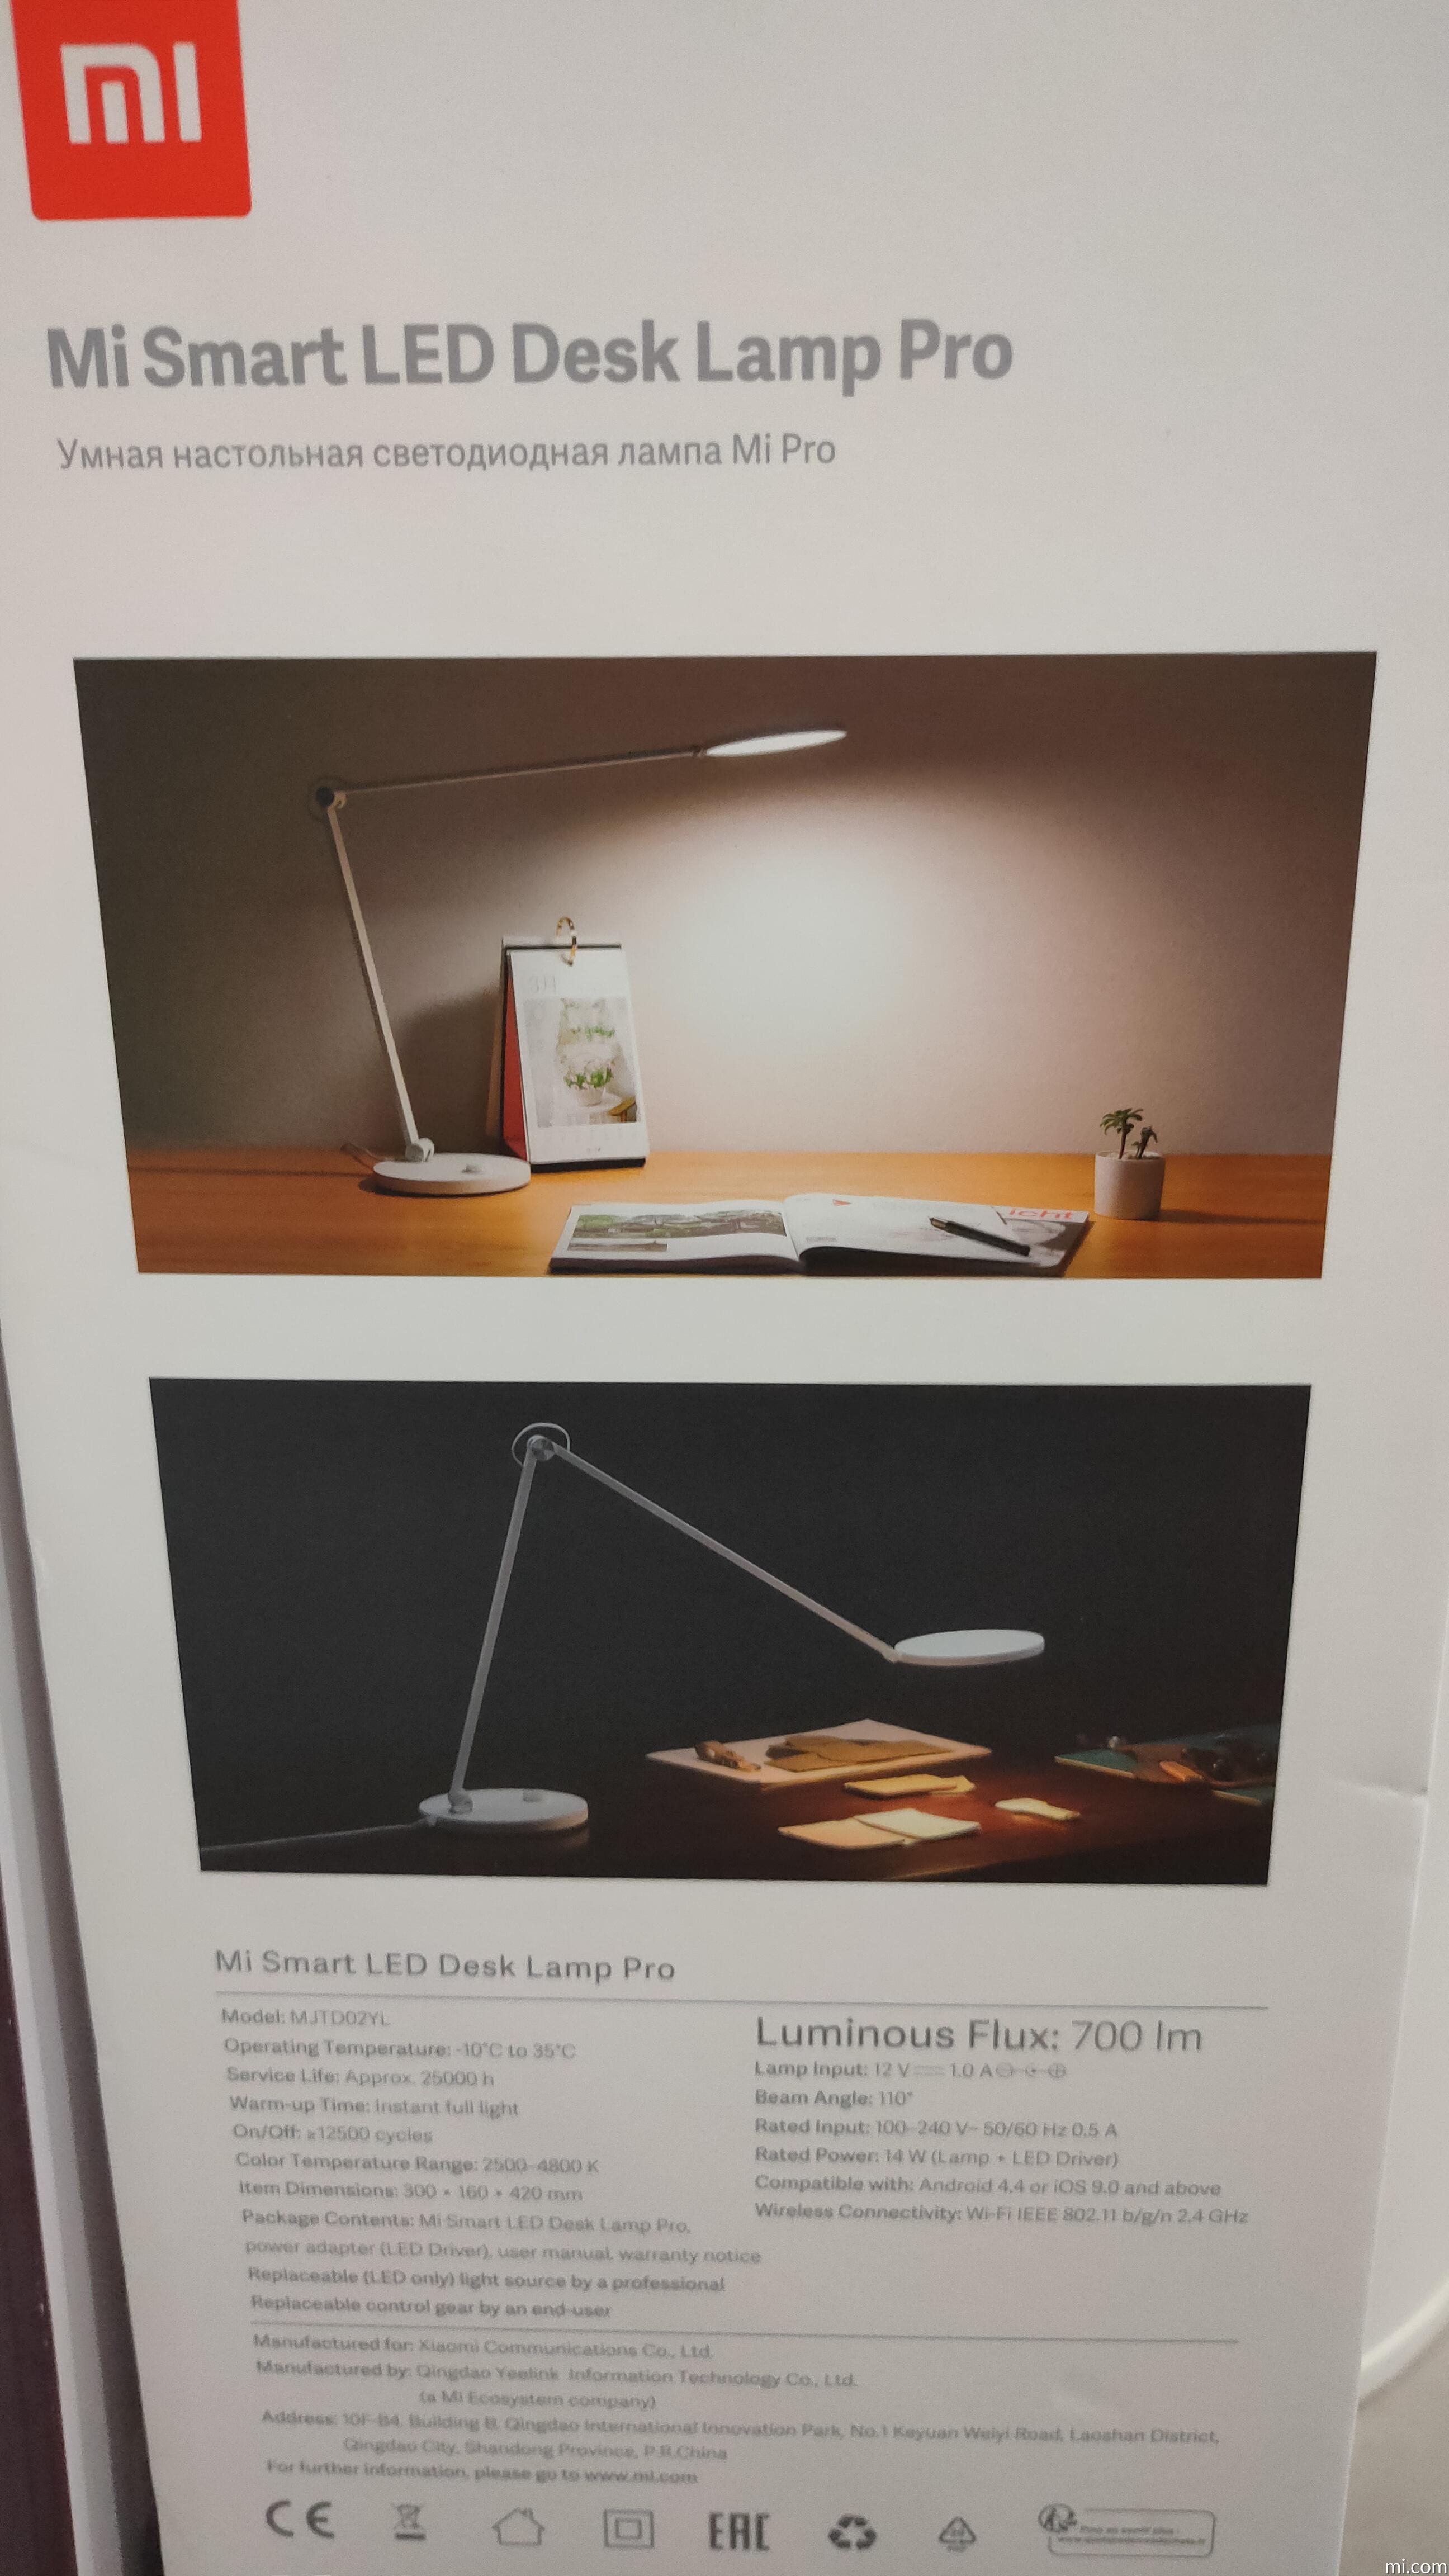 Xiaomi lanza una nueva lámpara de escritorio 3 en 1 con batería recargable  - Noticias Xiaomi - XIAOMIADICTOS